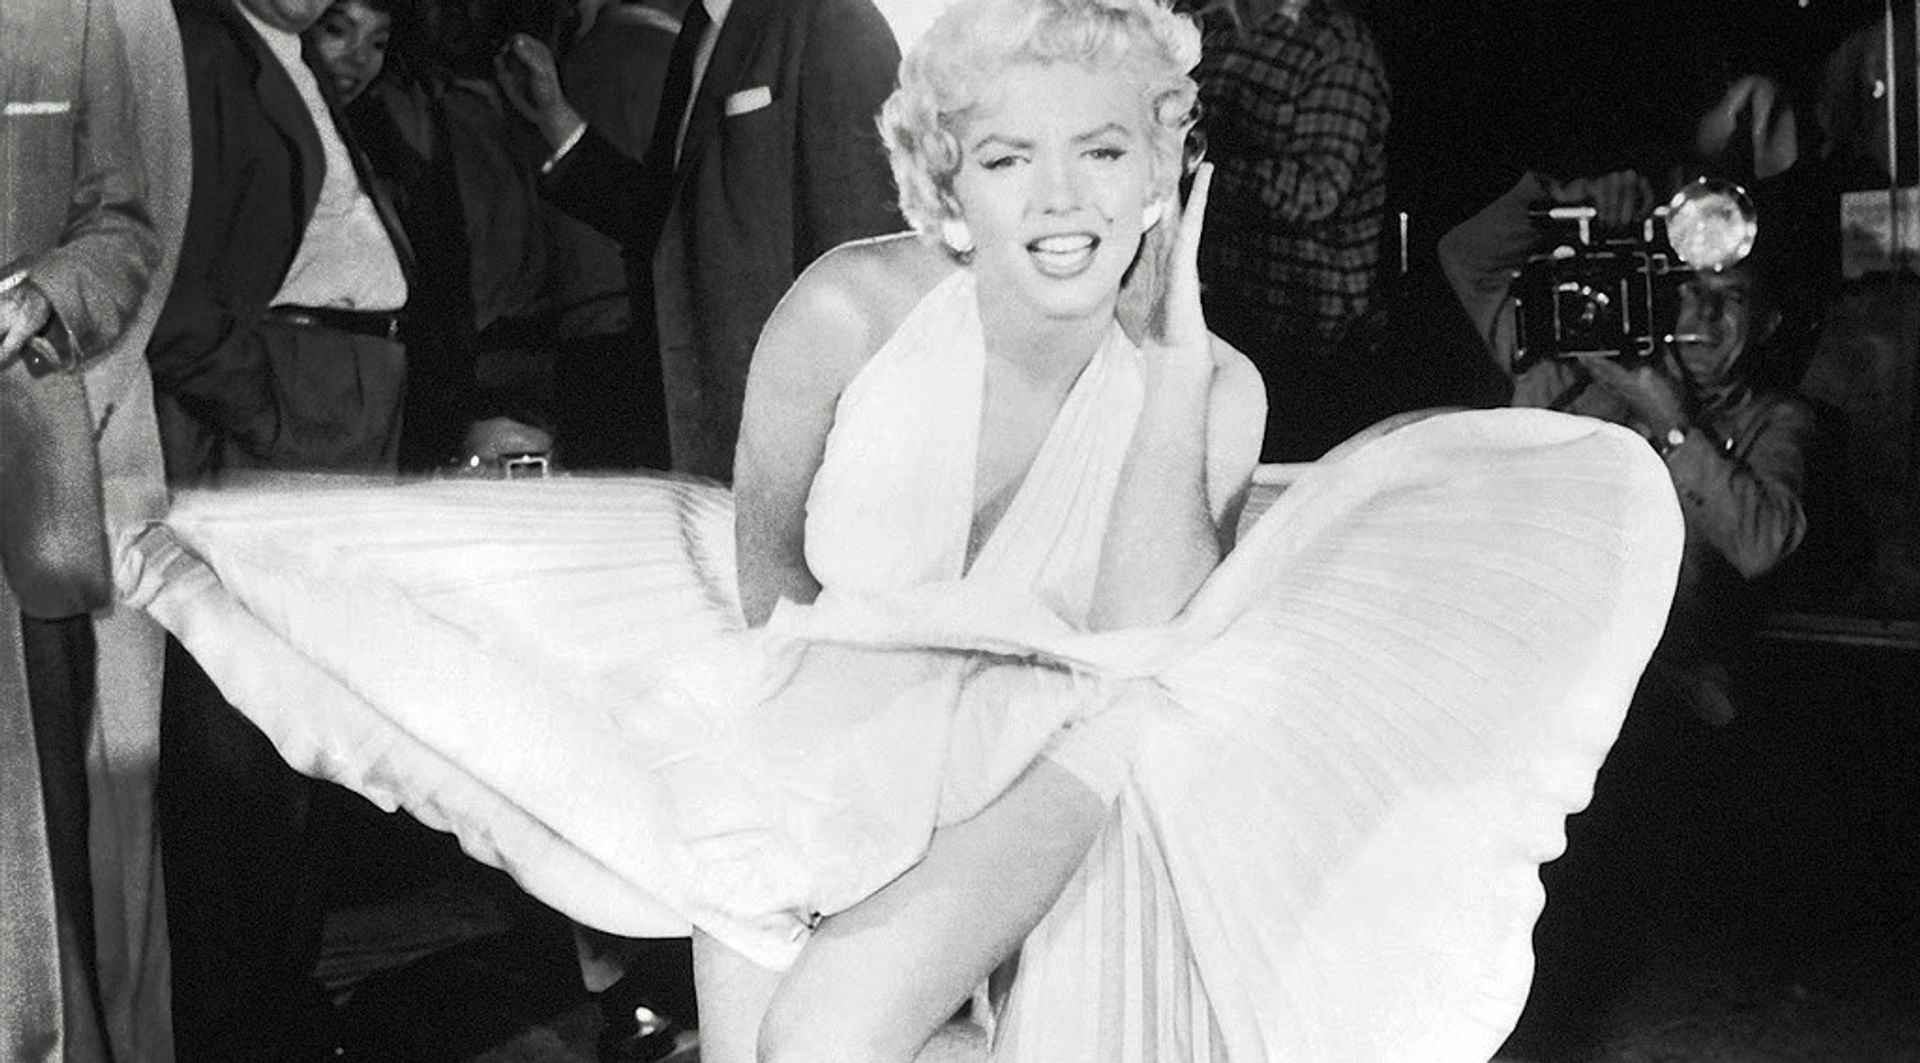 willekeurig Koken matras 5 x de opwaaiende jurk van Marilyn Monroe - De Wereld Draait Door - BNNVARA